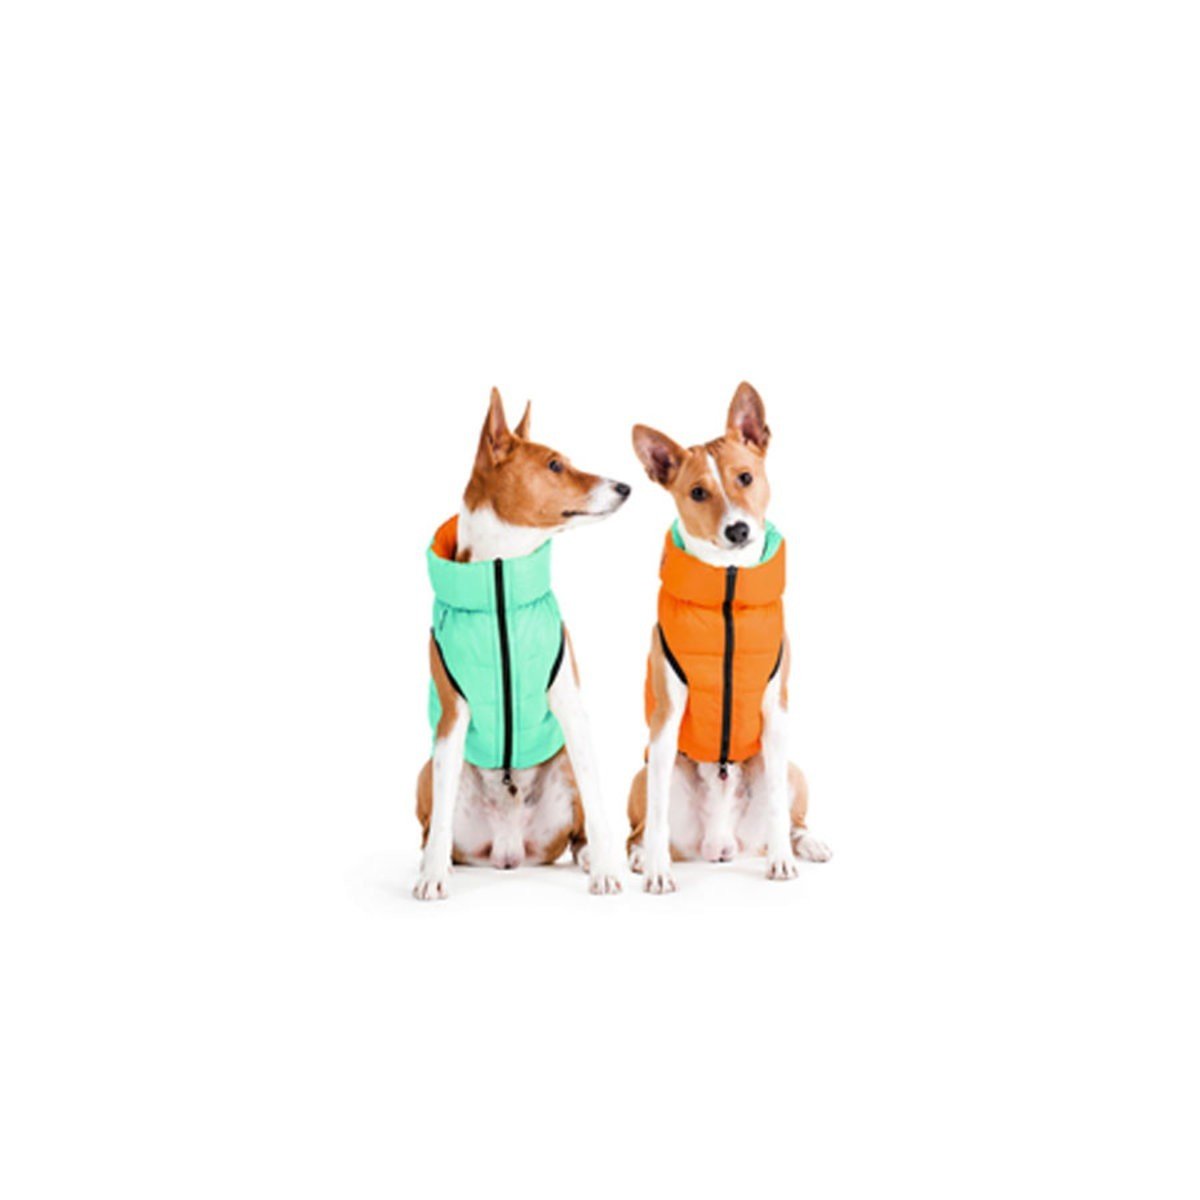 Курточка для собак AiryVest Lumi двухсторонняя, светящаяся в темноте, S40, салатово-оранжевая - фото 2